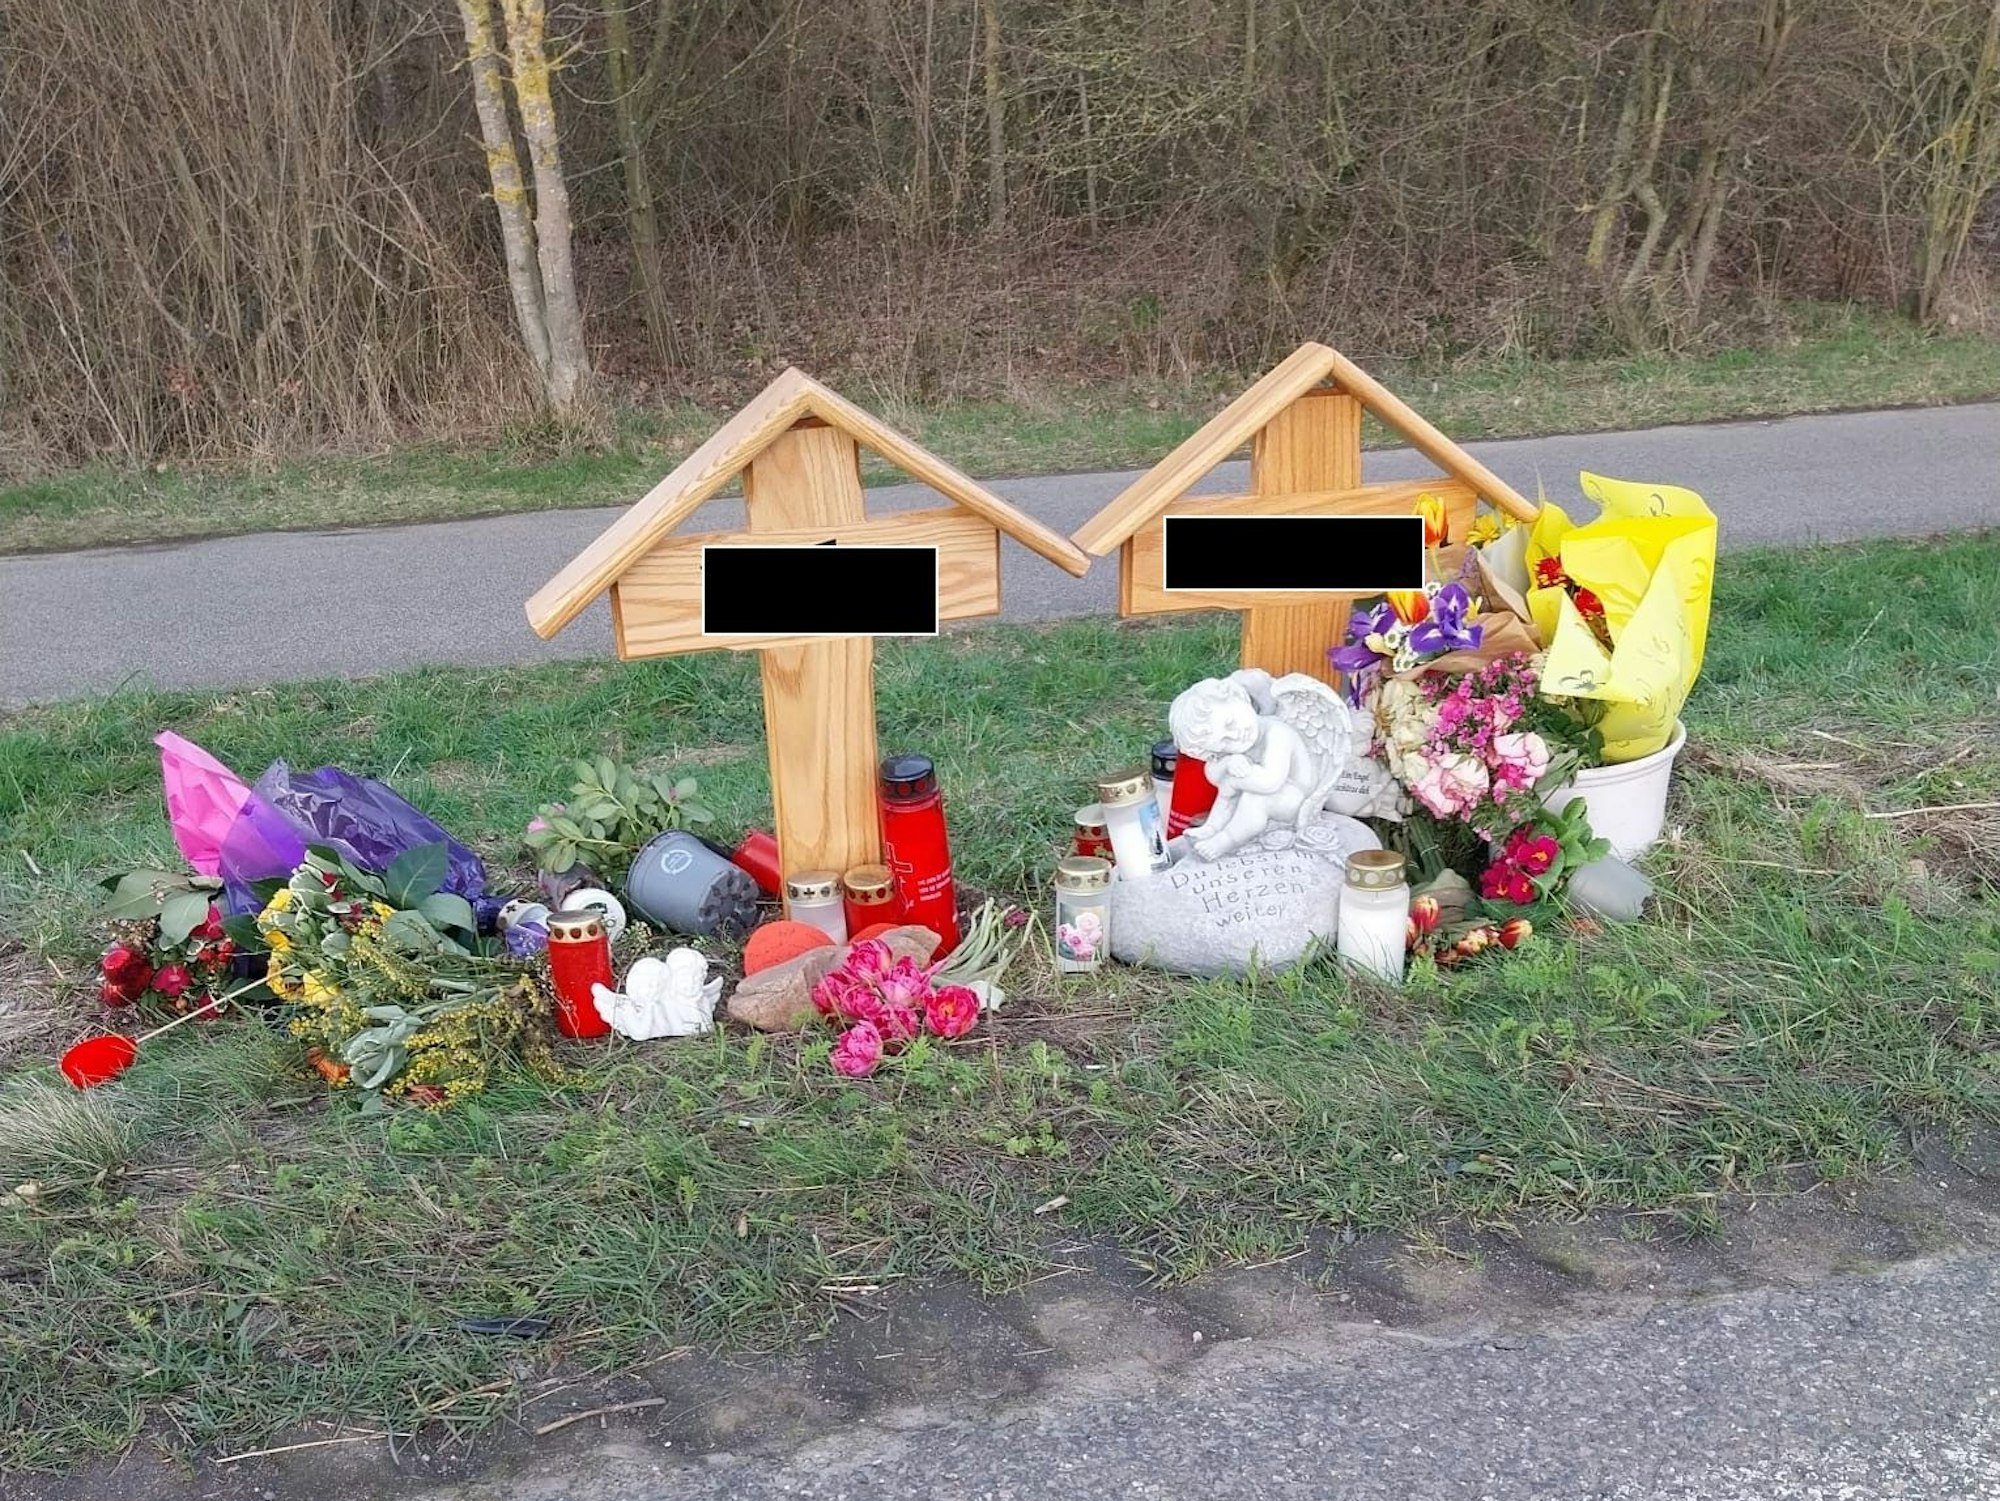 Zwei Holzkreuze stehen neben der Fahrbahn, Blumen, Kerzen und Engel wurden dort niedergelegt.